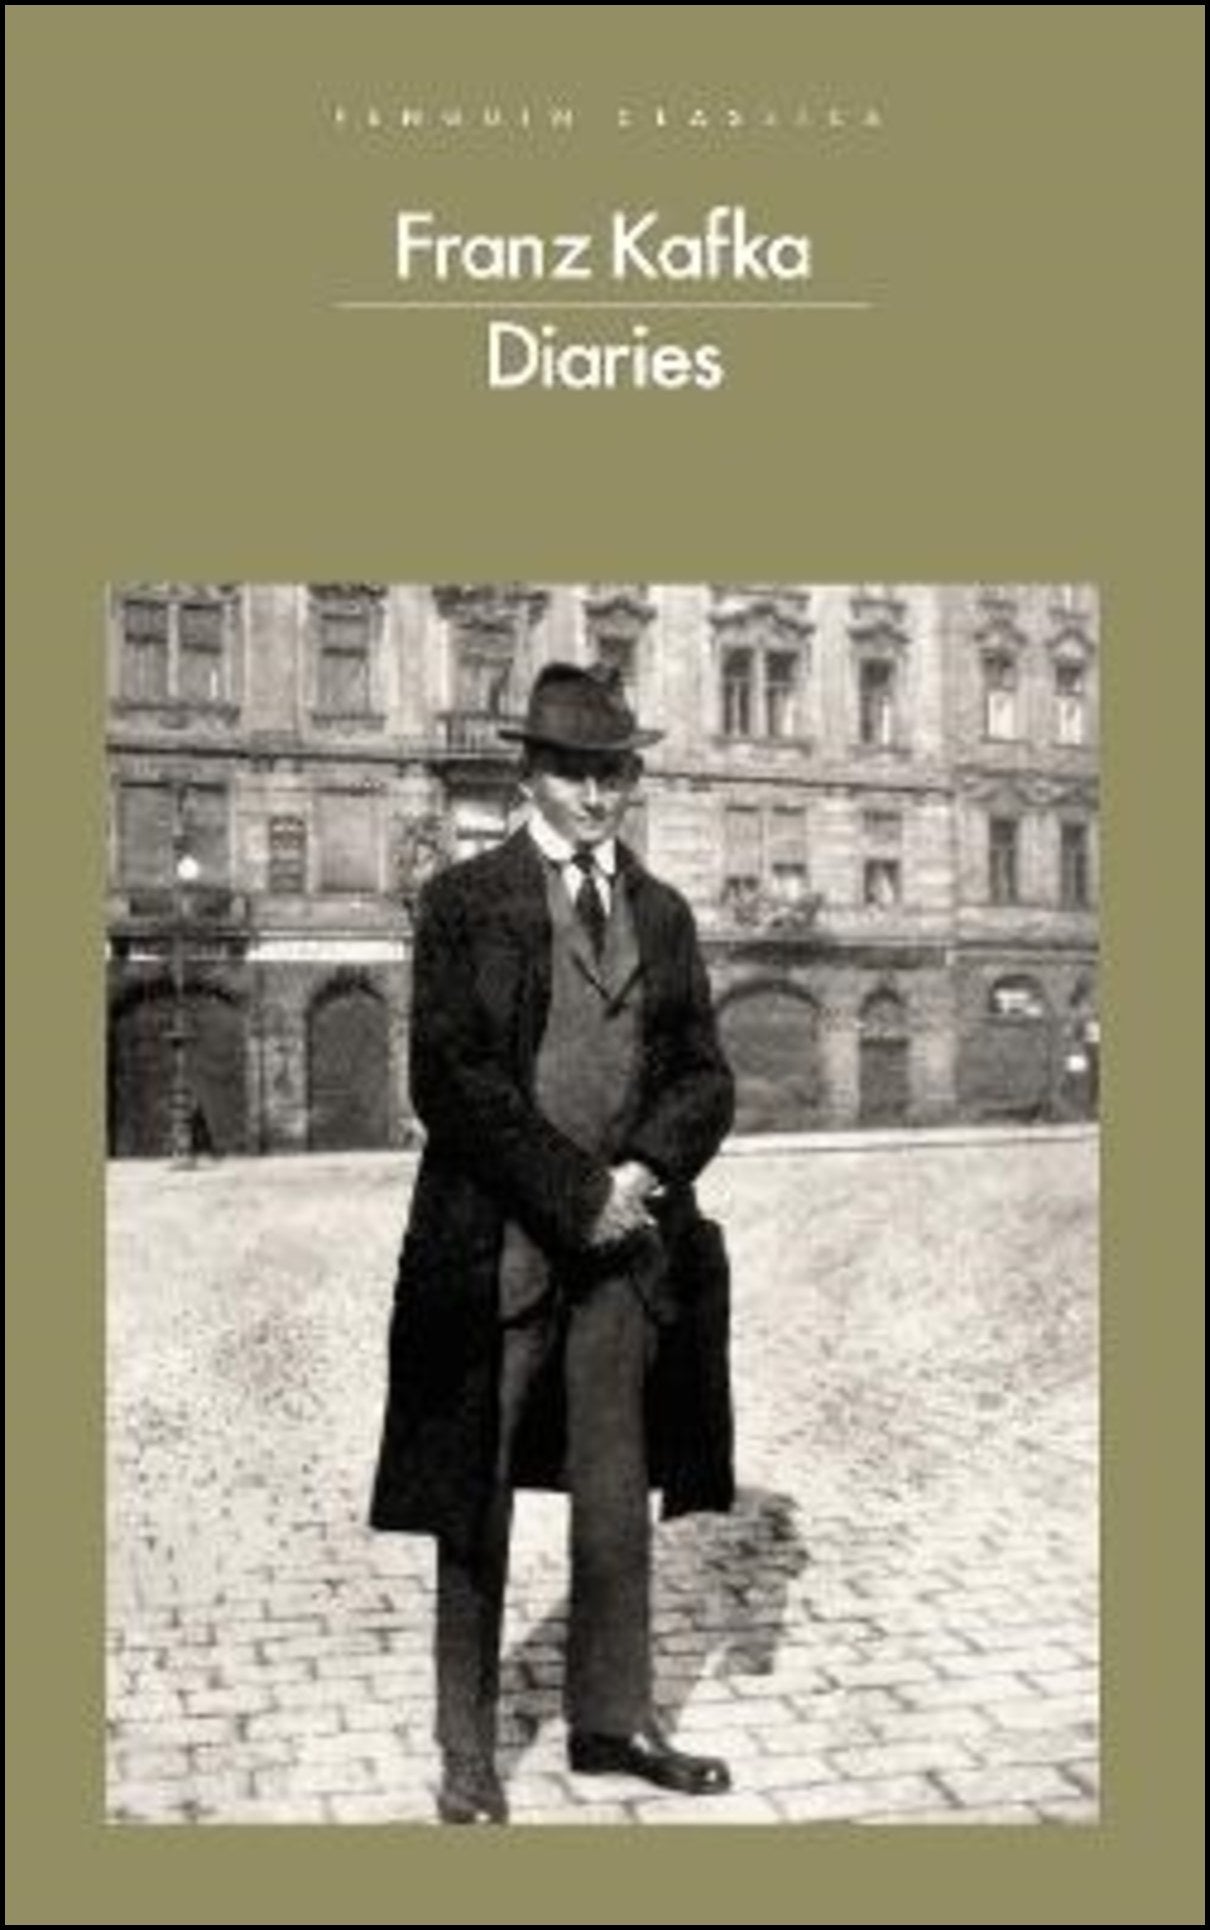 Kafka, Franz | The Diaries of Franz Kafka